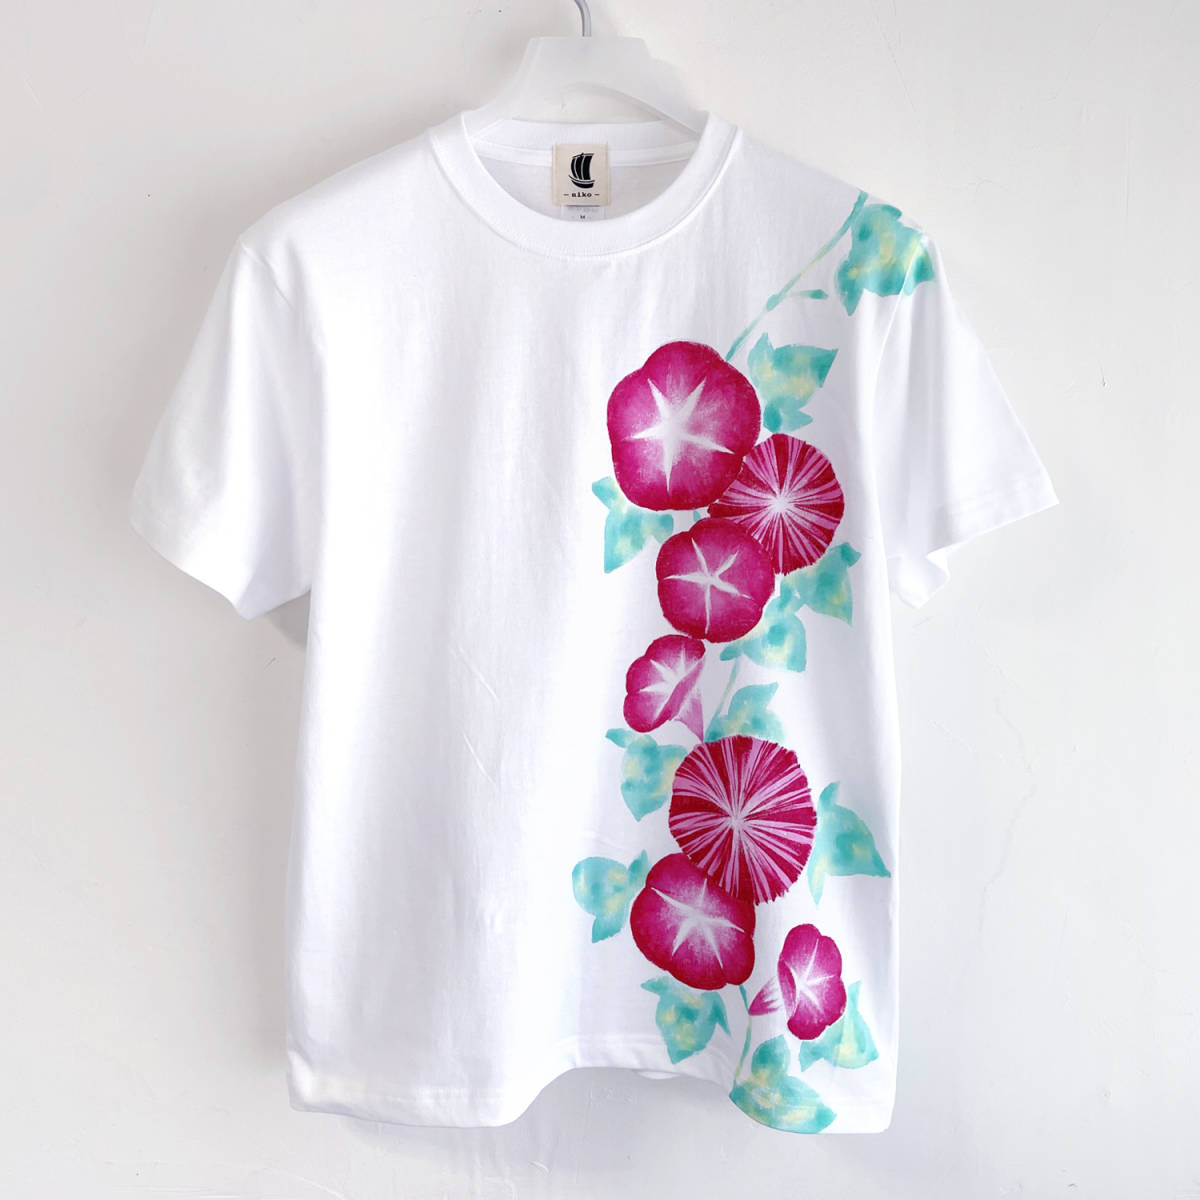 Herren-T-Shirt, Größe S, T-Shirt mit rosa Prunkwinden-Muster, Weiß, handgefertigt, handgezeichnetes T-Shirt, Blumenmuster, Kleine Größe, Rundhals, Gemustert